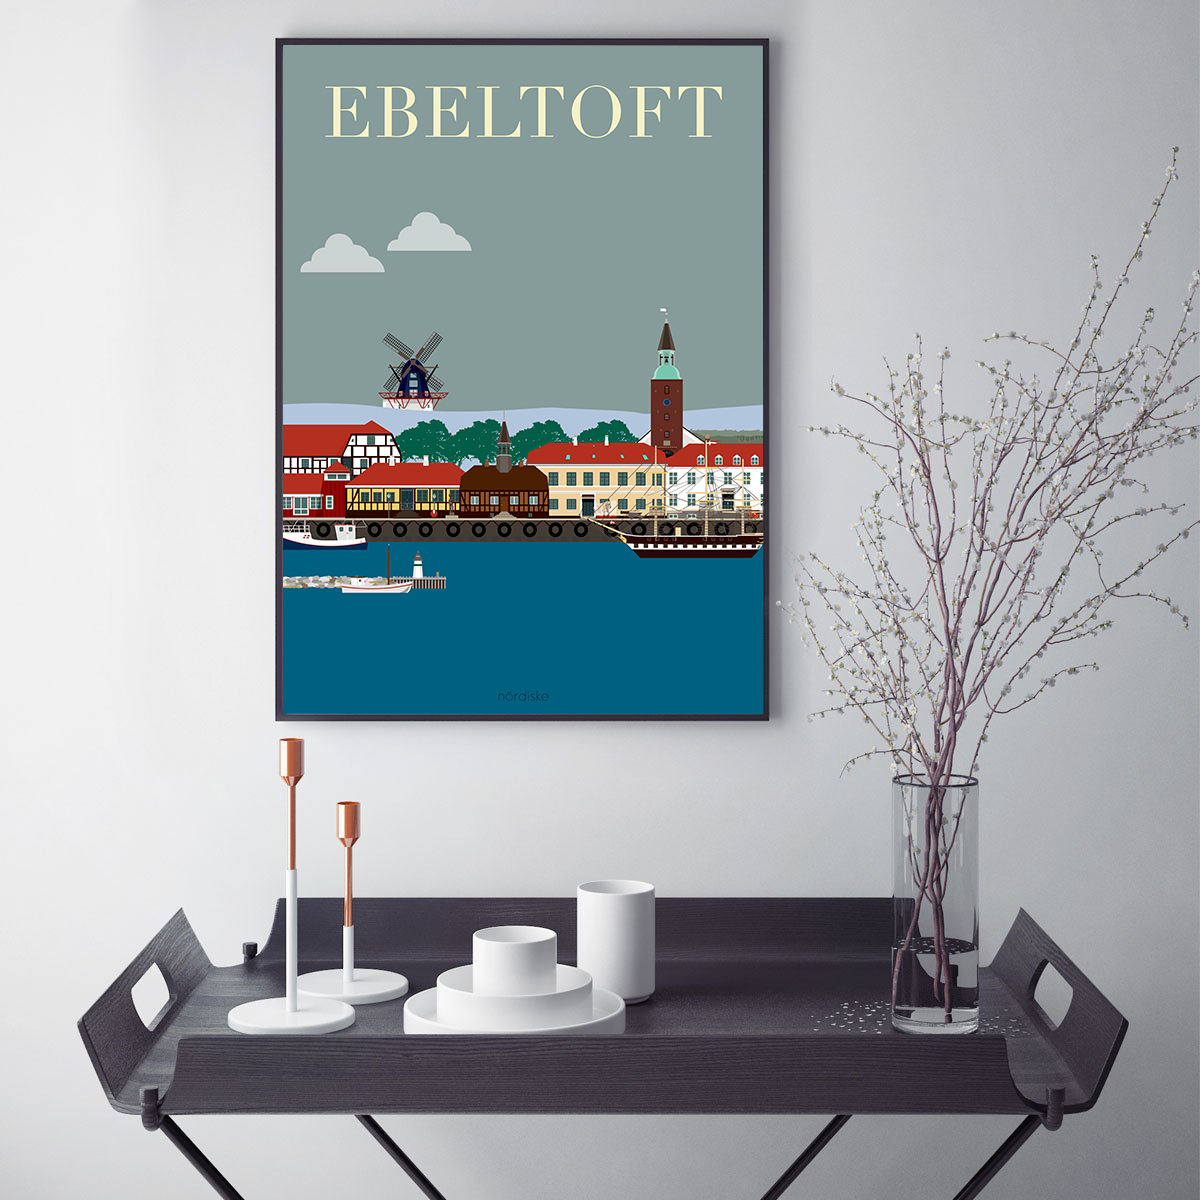 Ebeltoft Plakaten - de mest populære byplakater